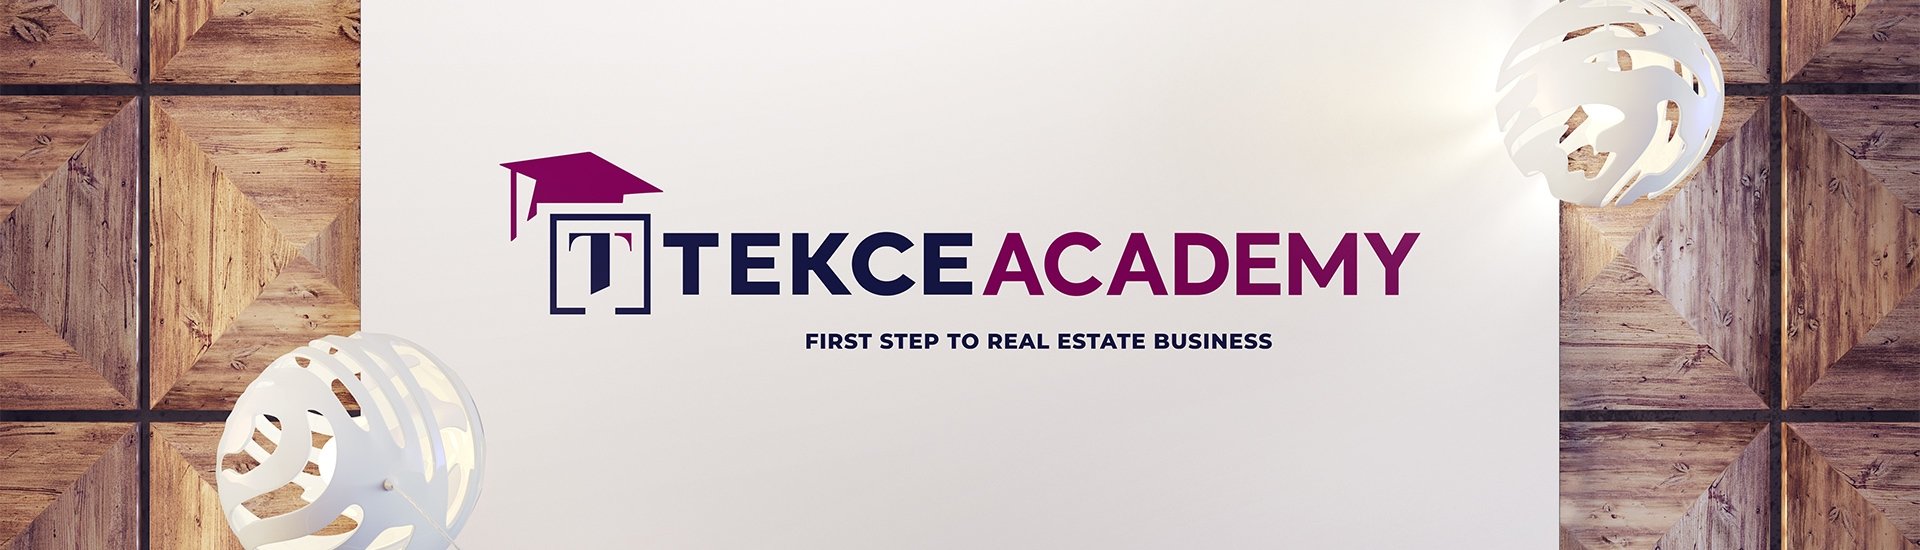 Tekce Academy